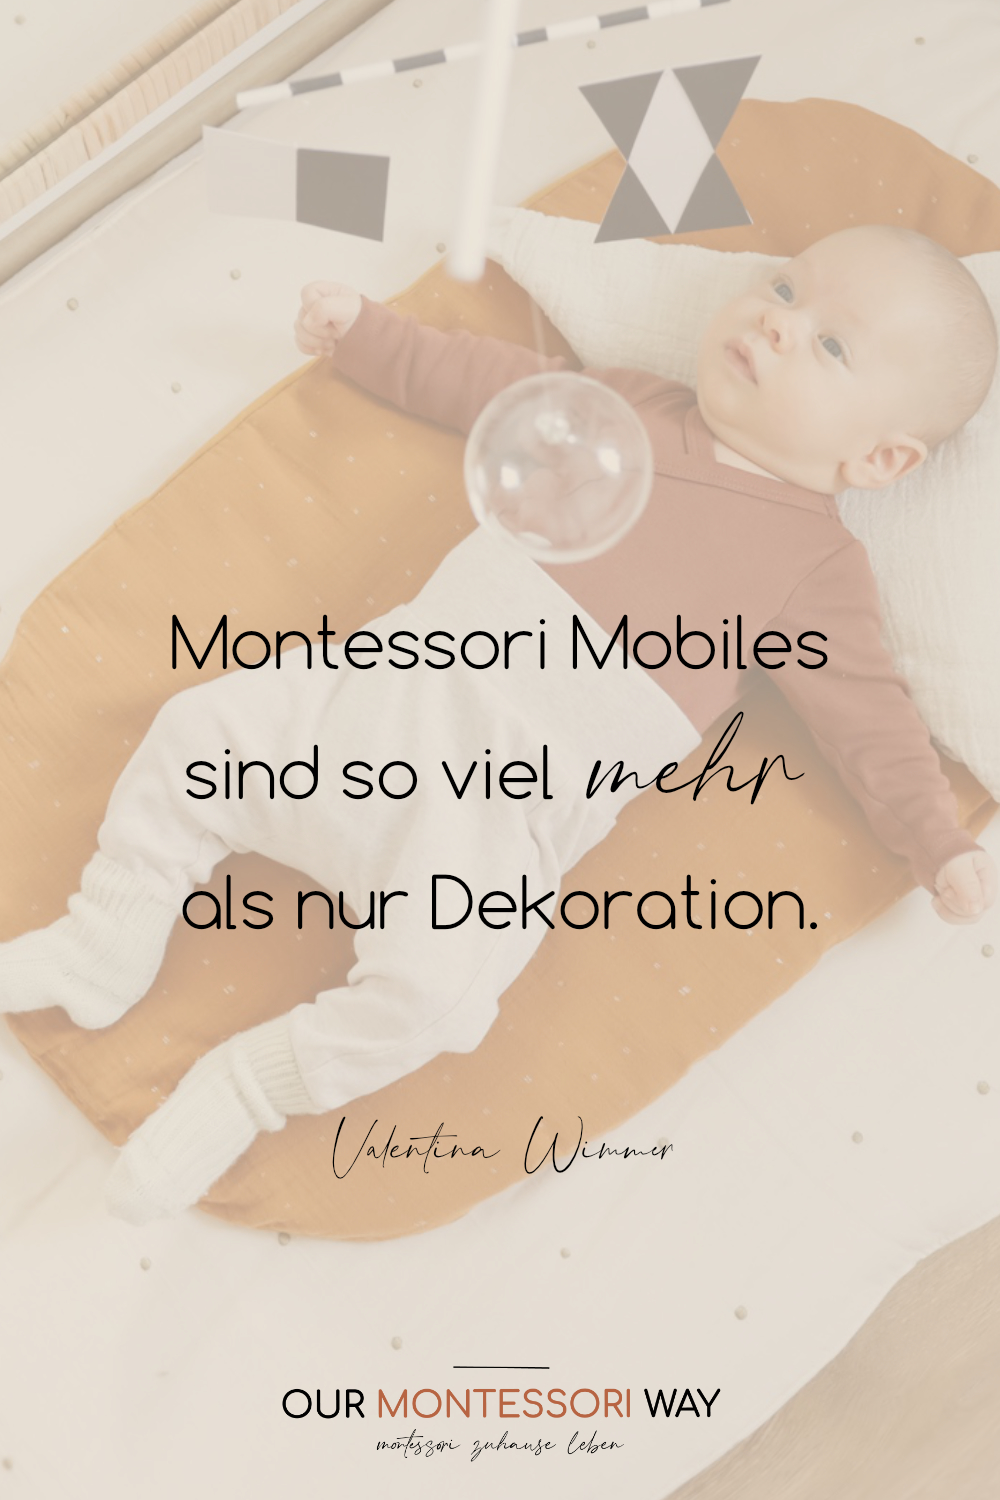 Die Montessori Mobiles sind so viel mehr als nur Dekoration.